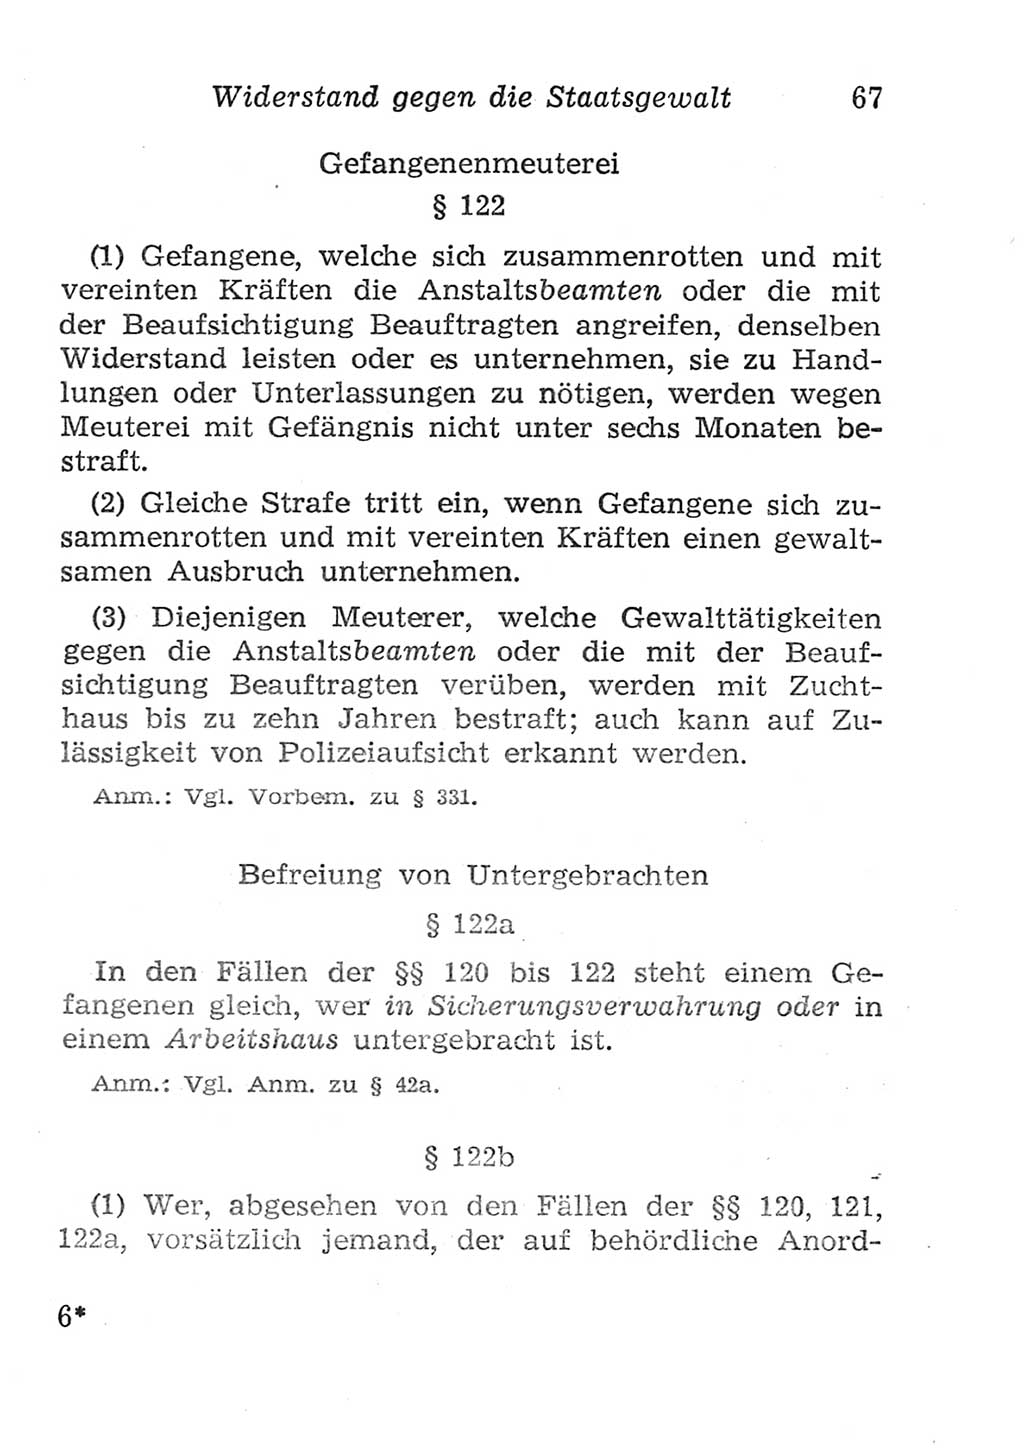 Strafgesetzbuch (StGB) und andere Strafgesetze [Deutsche Demokratische Republik (DDR)] 1957, Seite 67 (StGB Strafges. DDR 1957, S. 67)